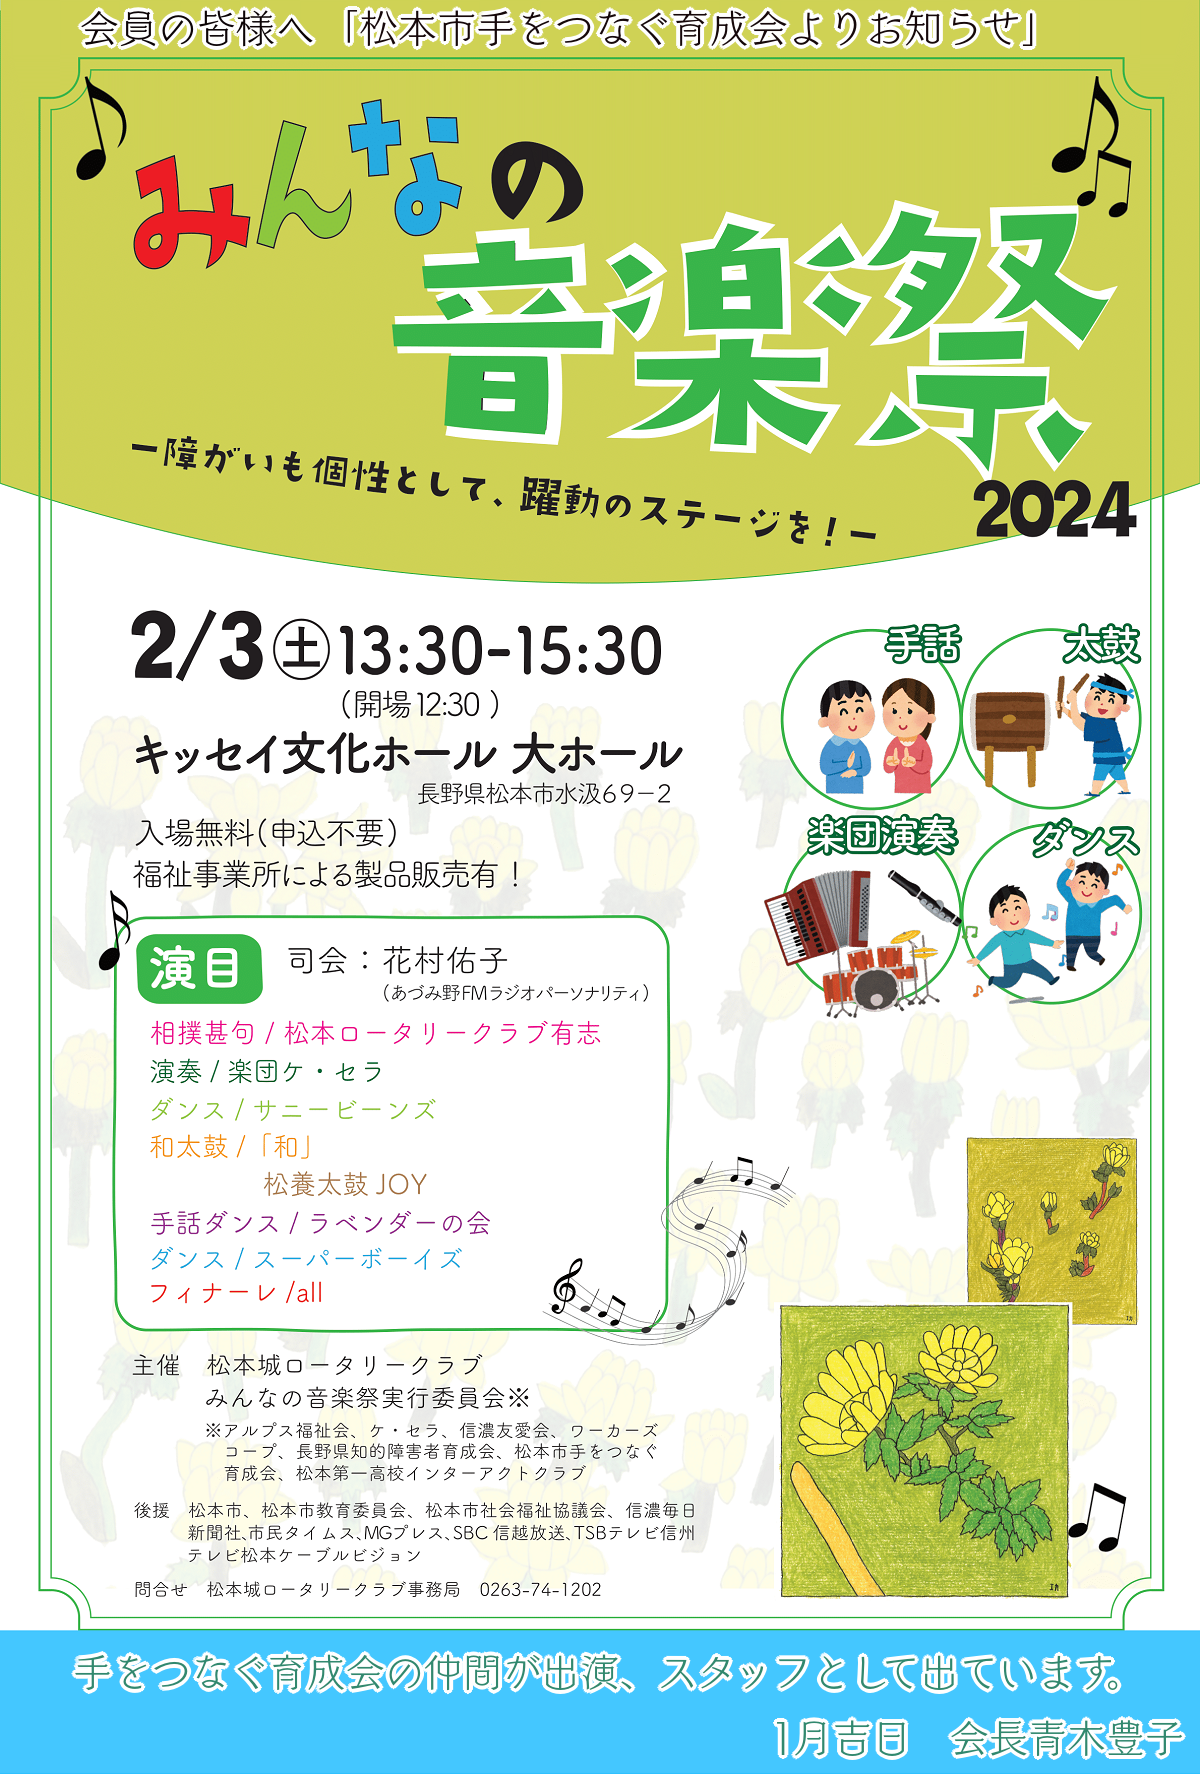 2月3日(土)【来場無料♪】みんなの音楽祭in松本市キッセイ文化ホール開催します